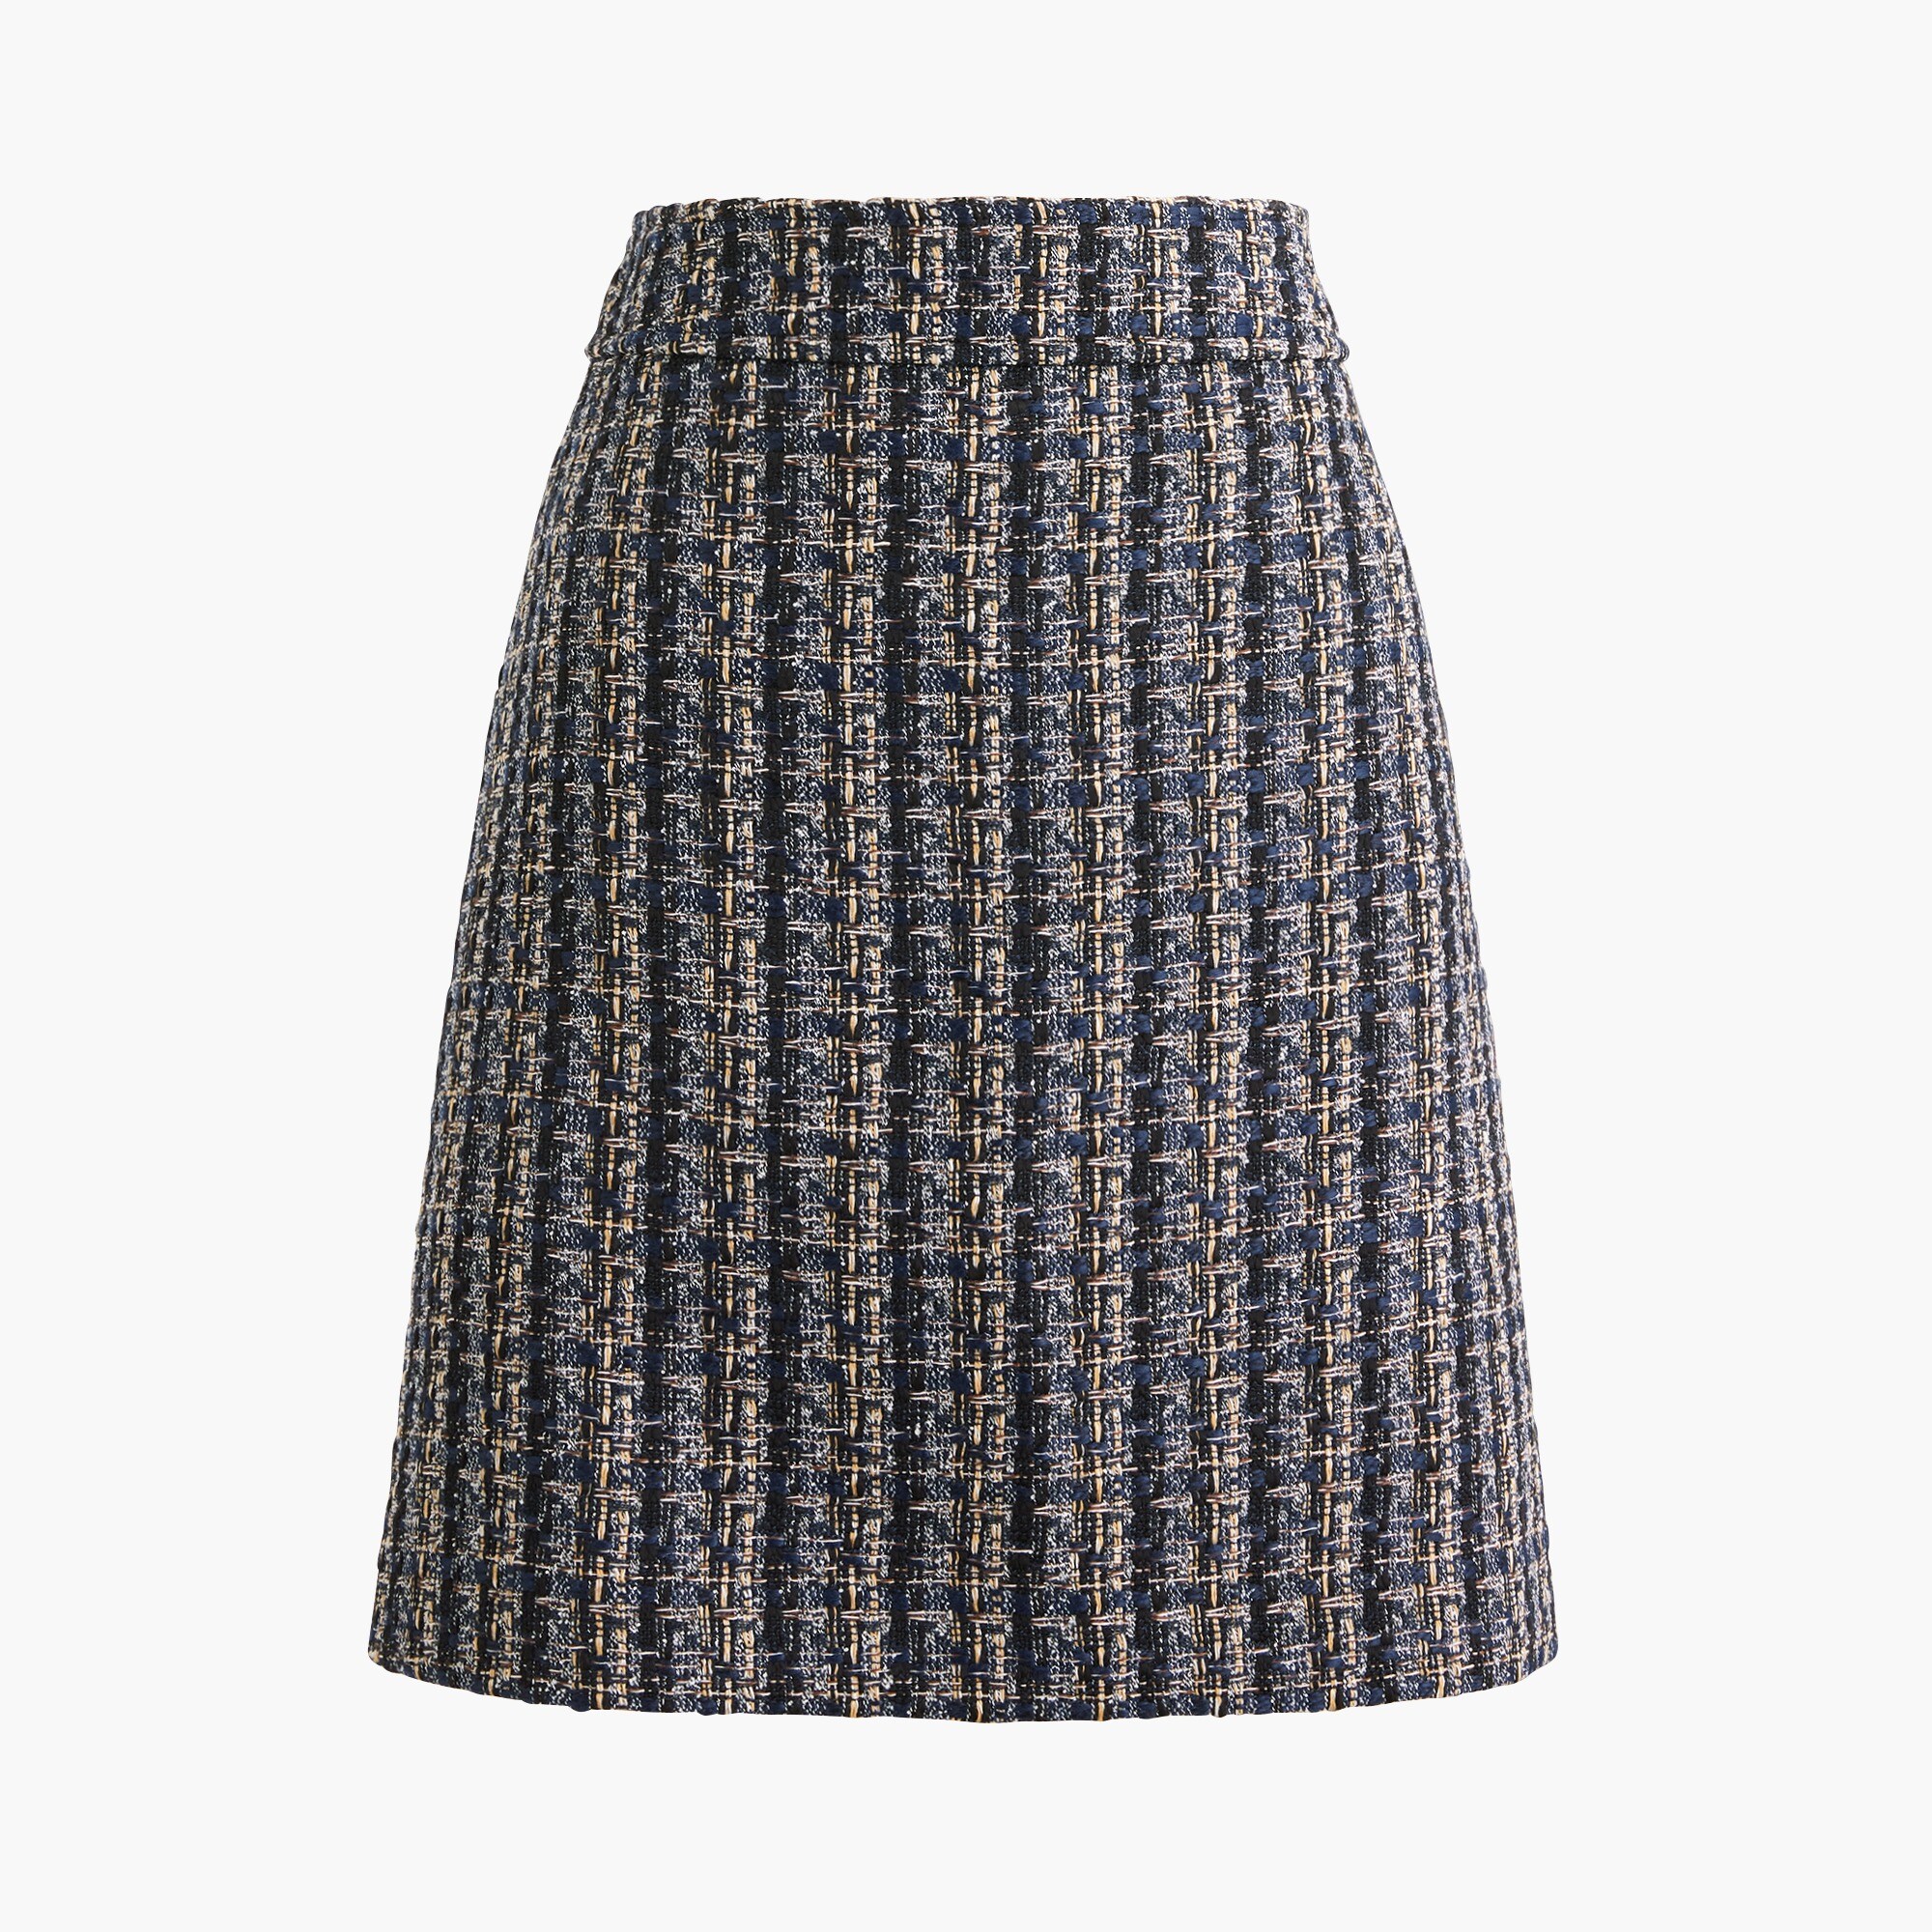  Tweed mini skirt